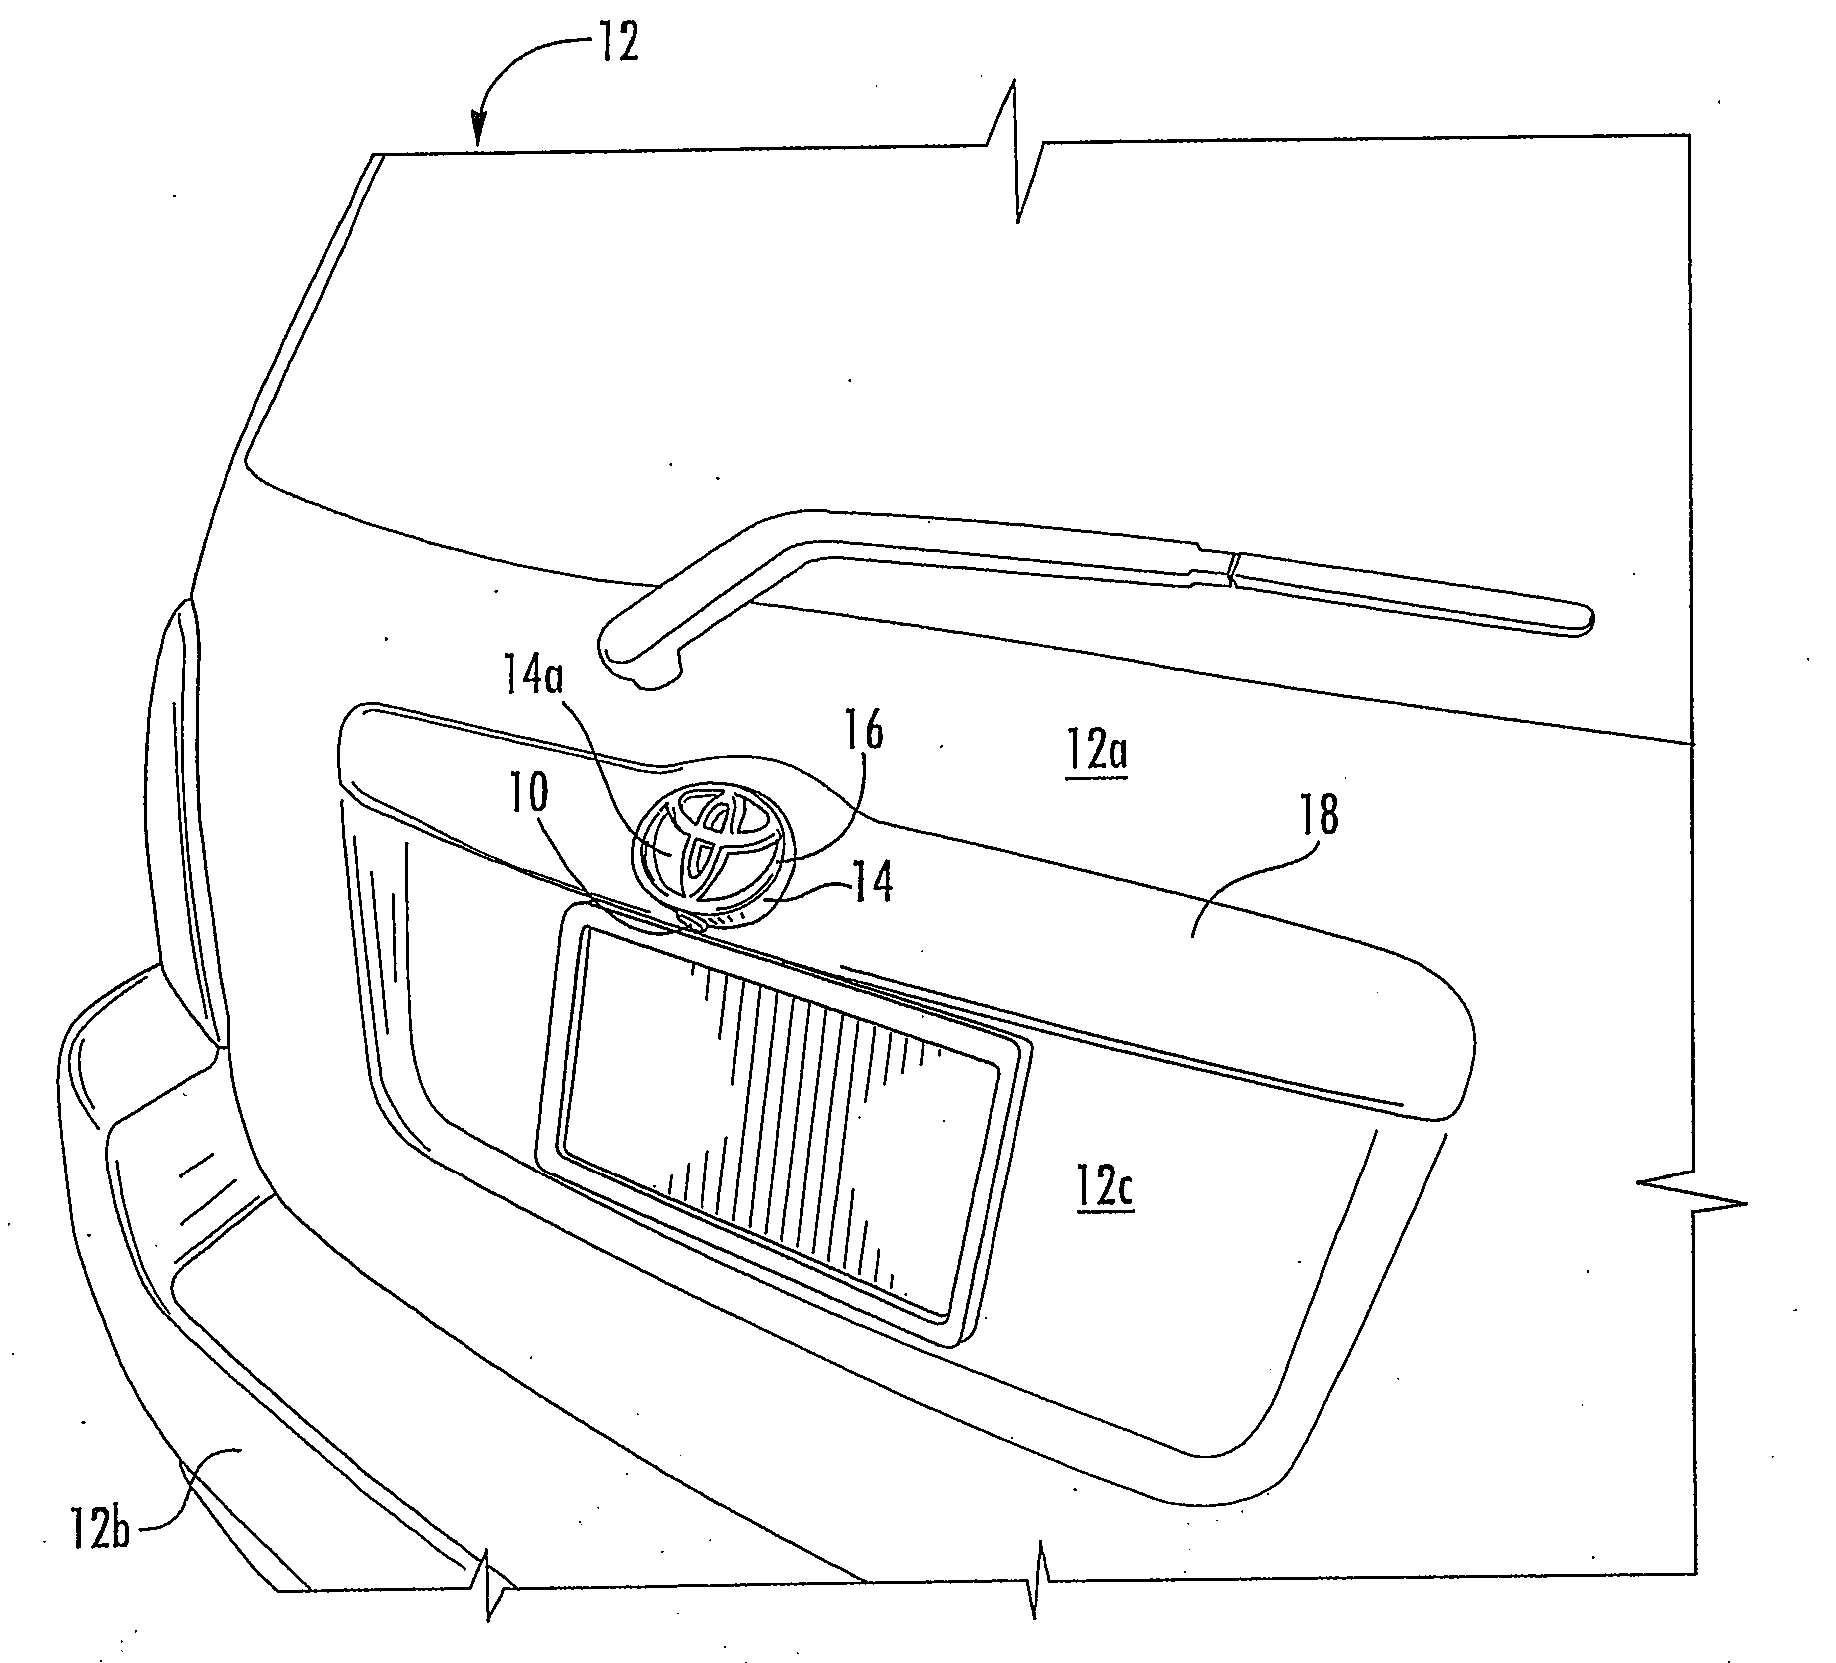 Camera mounted at rear of vehicle